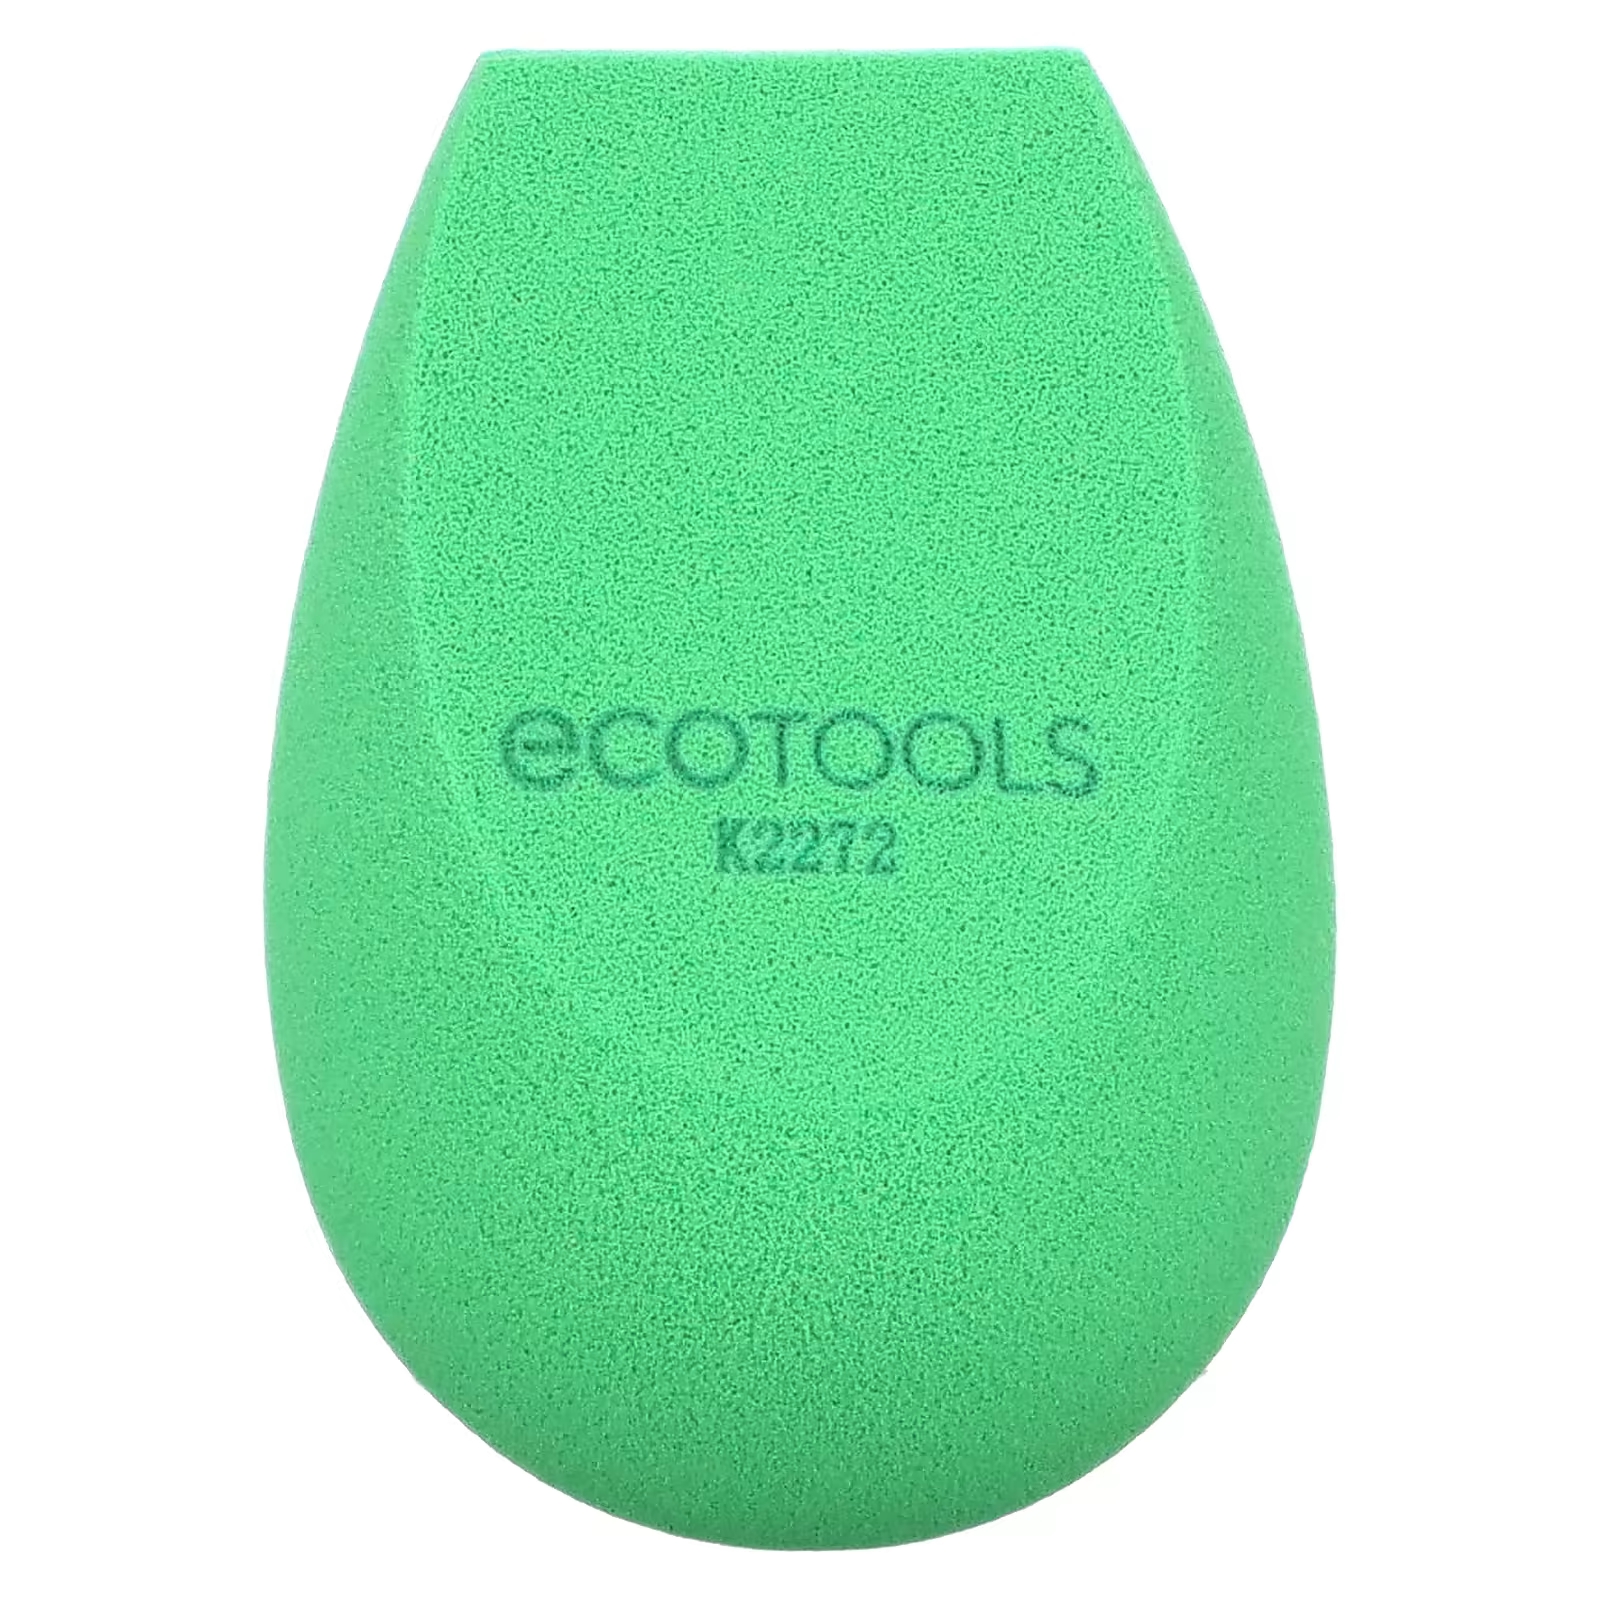 Спонж для макияжа EcoTools Bioblender, зеленый ecotools brighter tomorrow набор bioblender 3 губки очищающее средство 4 предмета